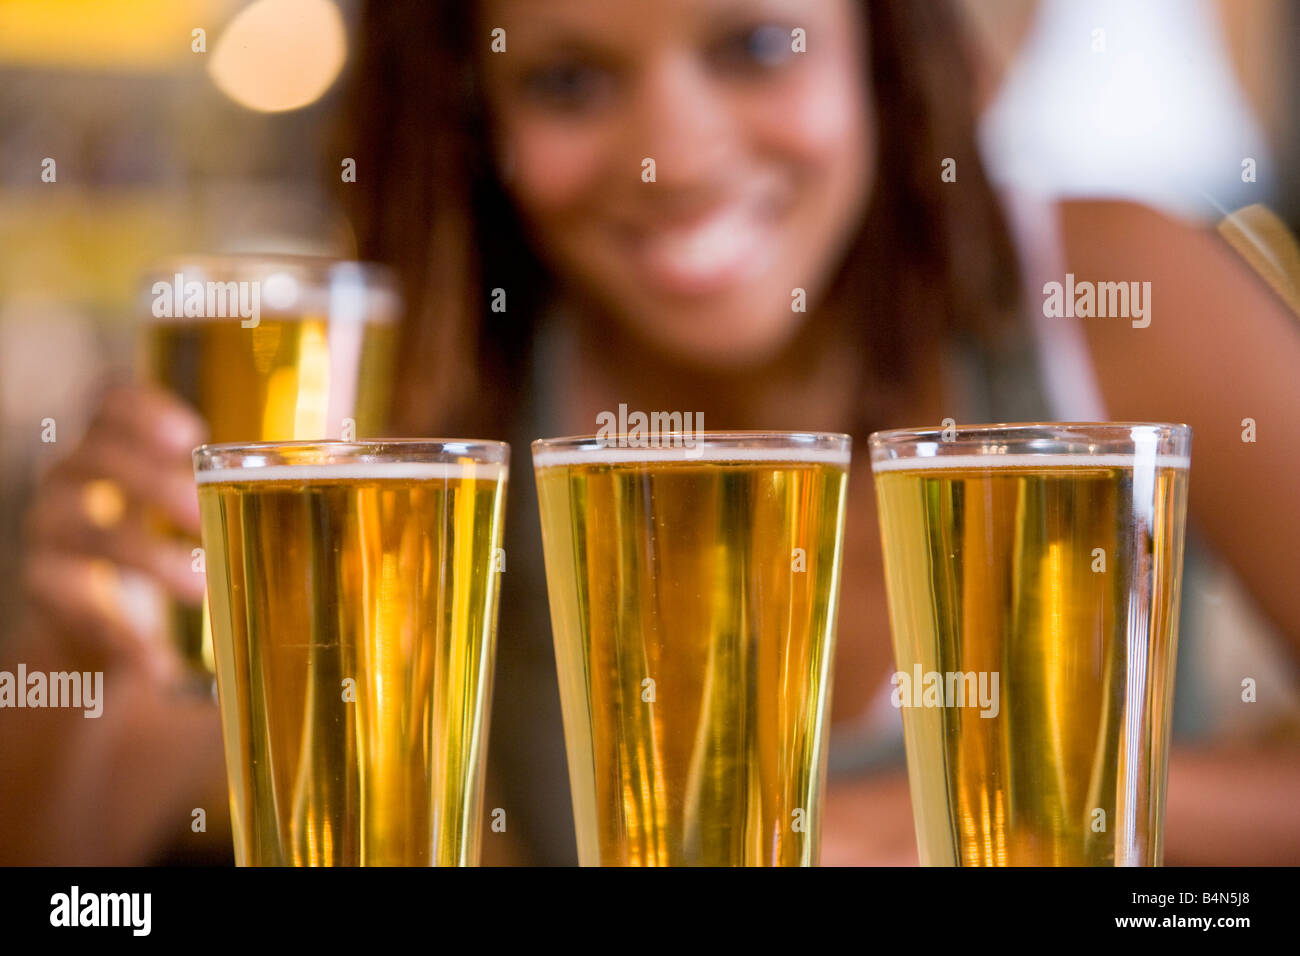 Mujer posando con varios vasos de cerveza Foto de stock